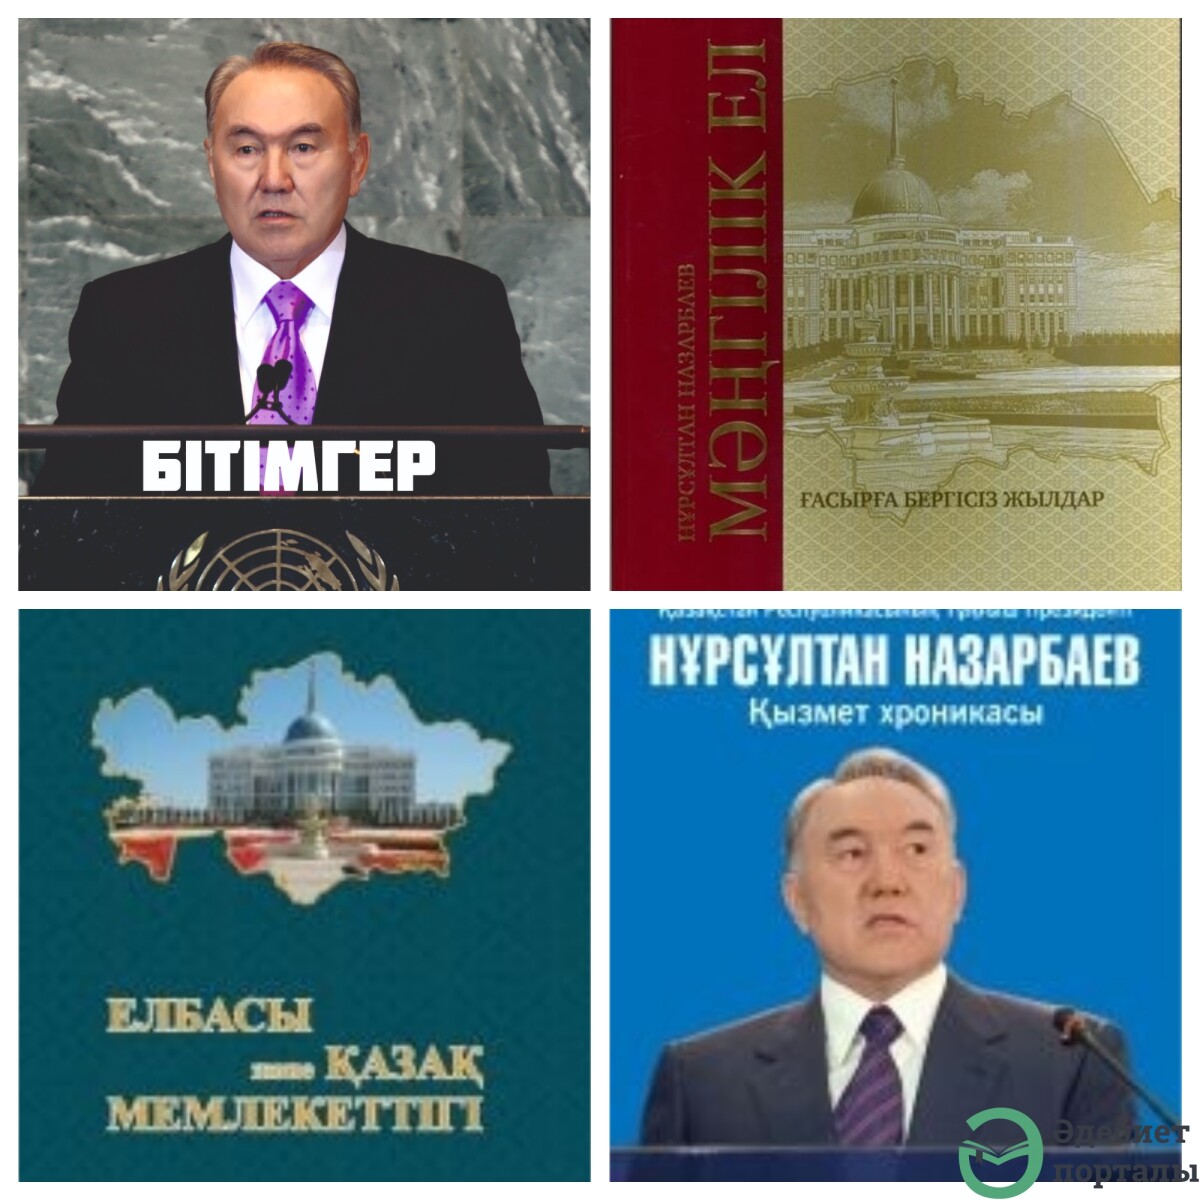 Елбасы Нұрсұлтан Назарбаев туралы кітаптар - adebiportal.kz